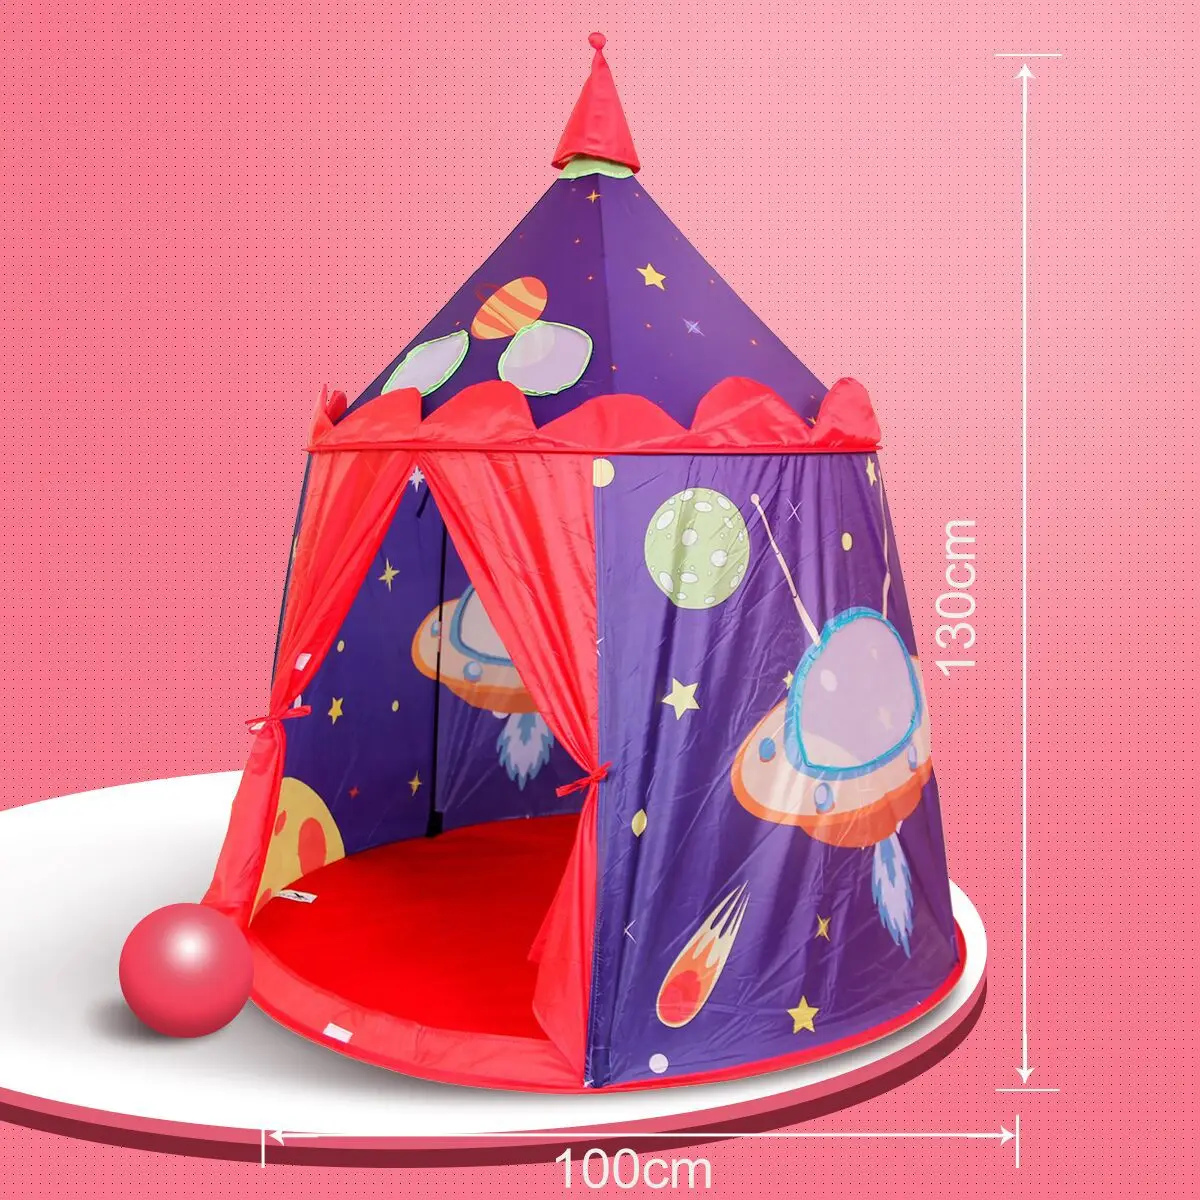 Детский шатер из замка Вселенной, фиолетовый космический замок, детский игровой домик, игрушечный игровой домик